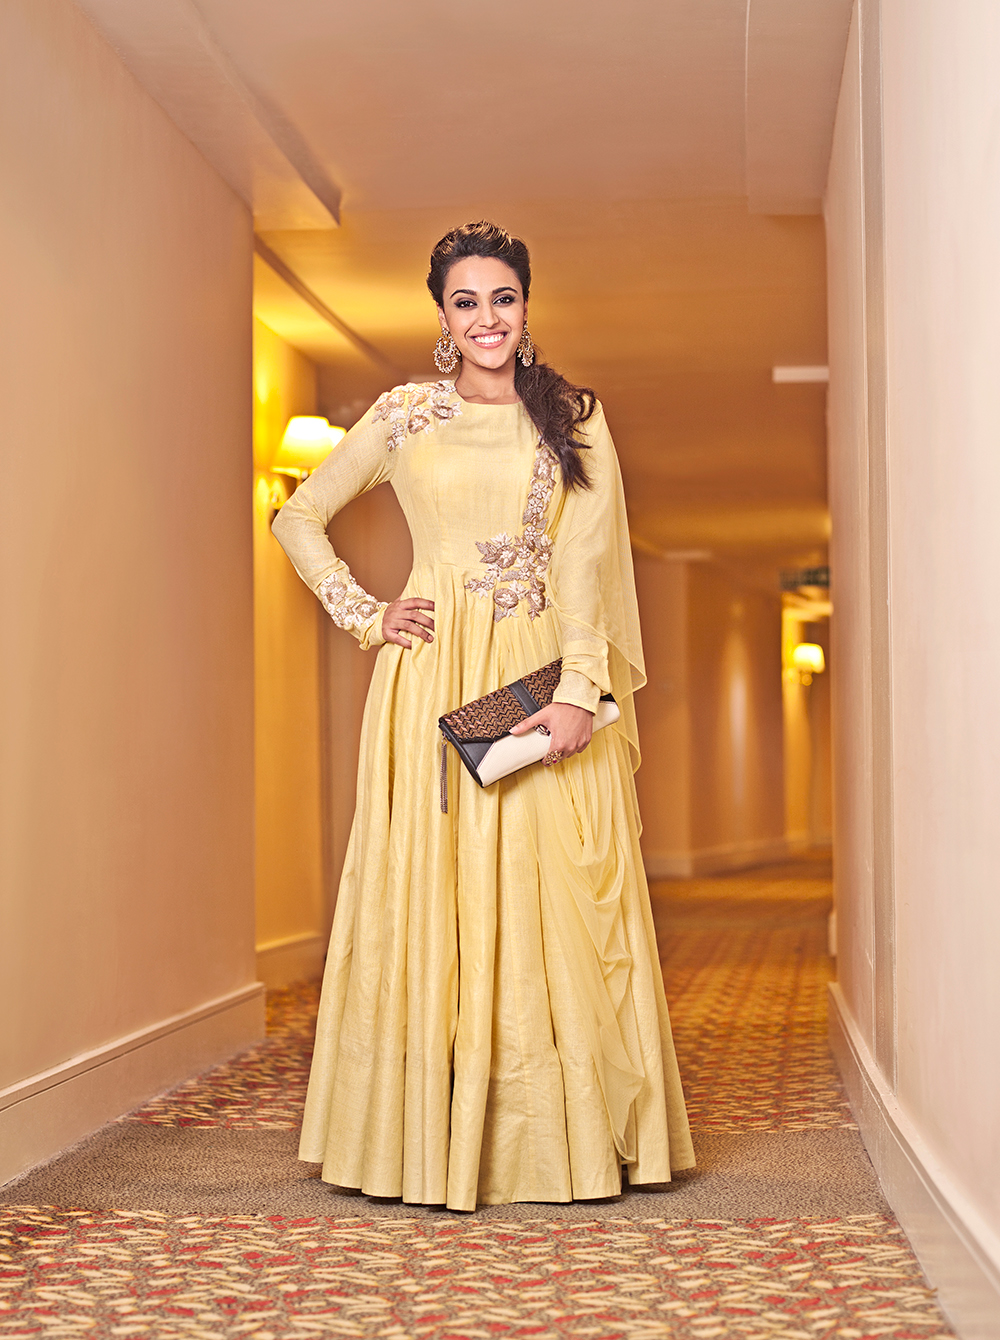 Swara Bhasker fashion editorial lifestyle magazine shoot Female Model female celebrity